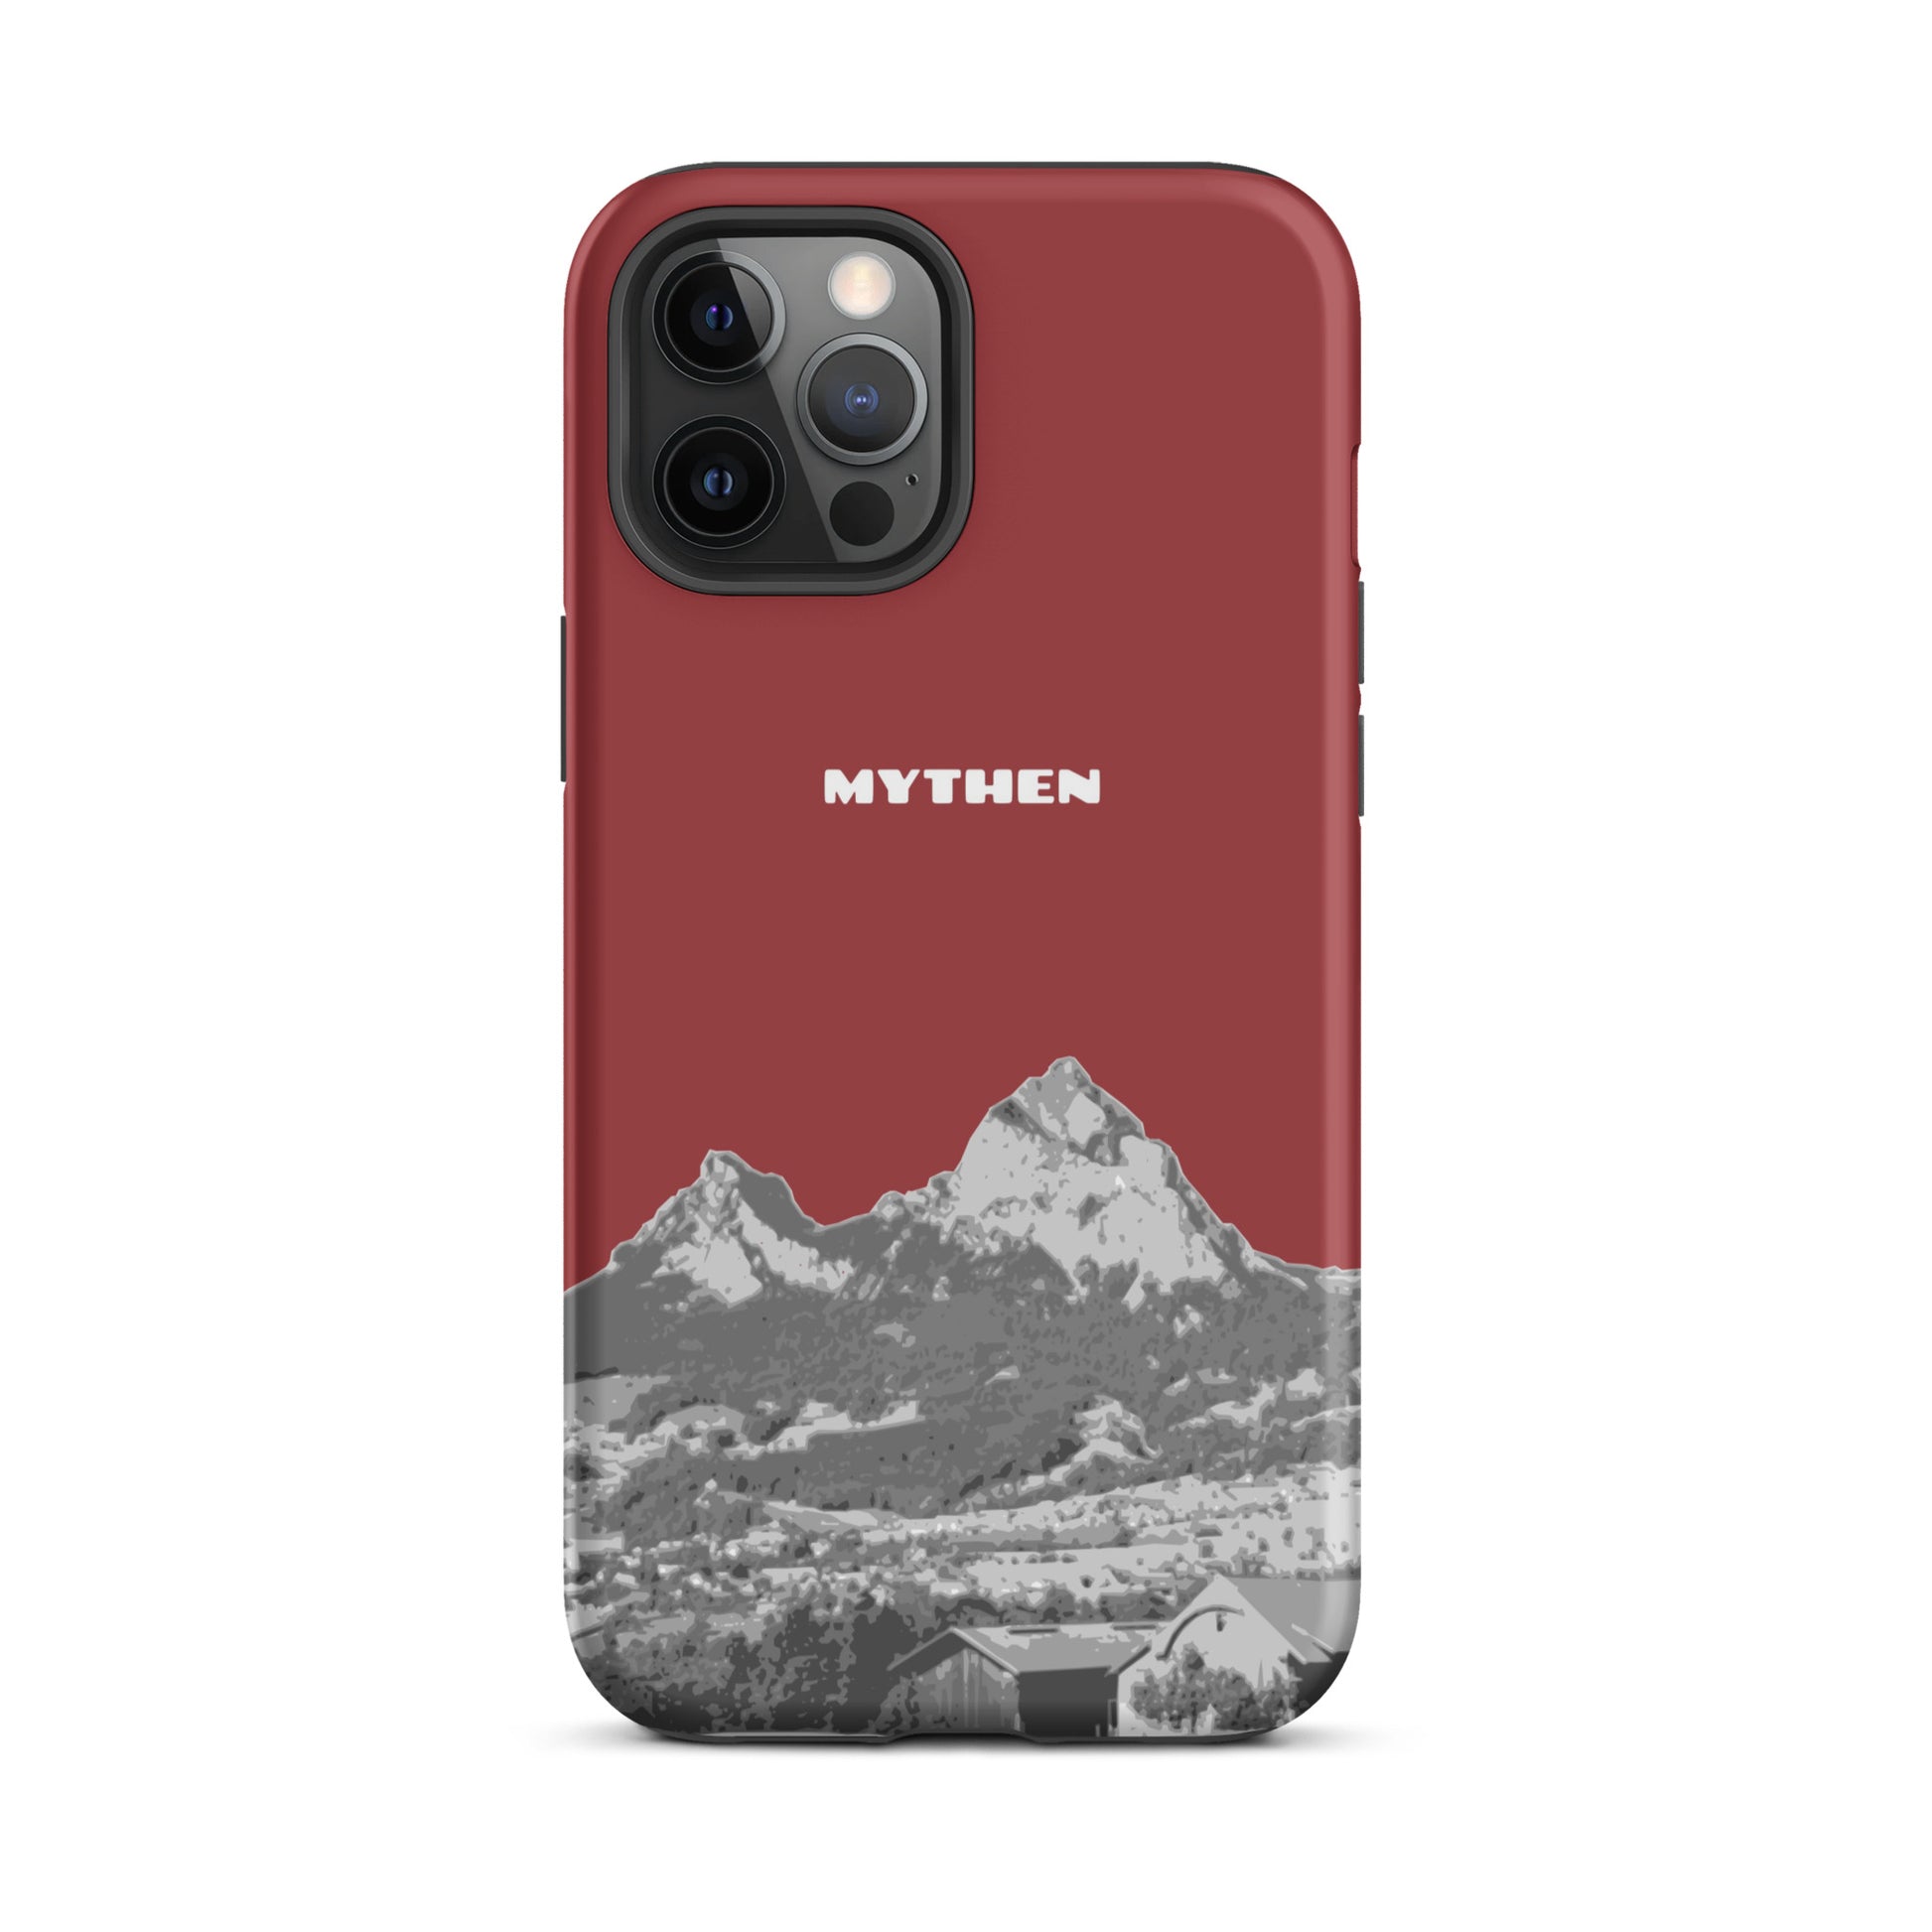 Hülle für das iPhone 12 Pro Max von Apple in der Farbe Rot, die den Grossen Mythen und den Kleinen Mythen bei Schwyz zeigt. 